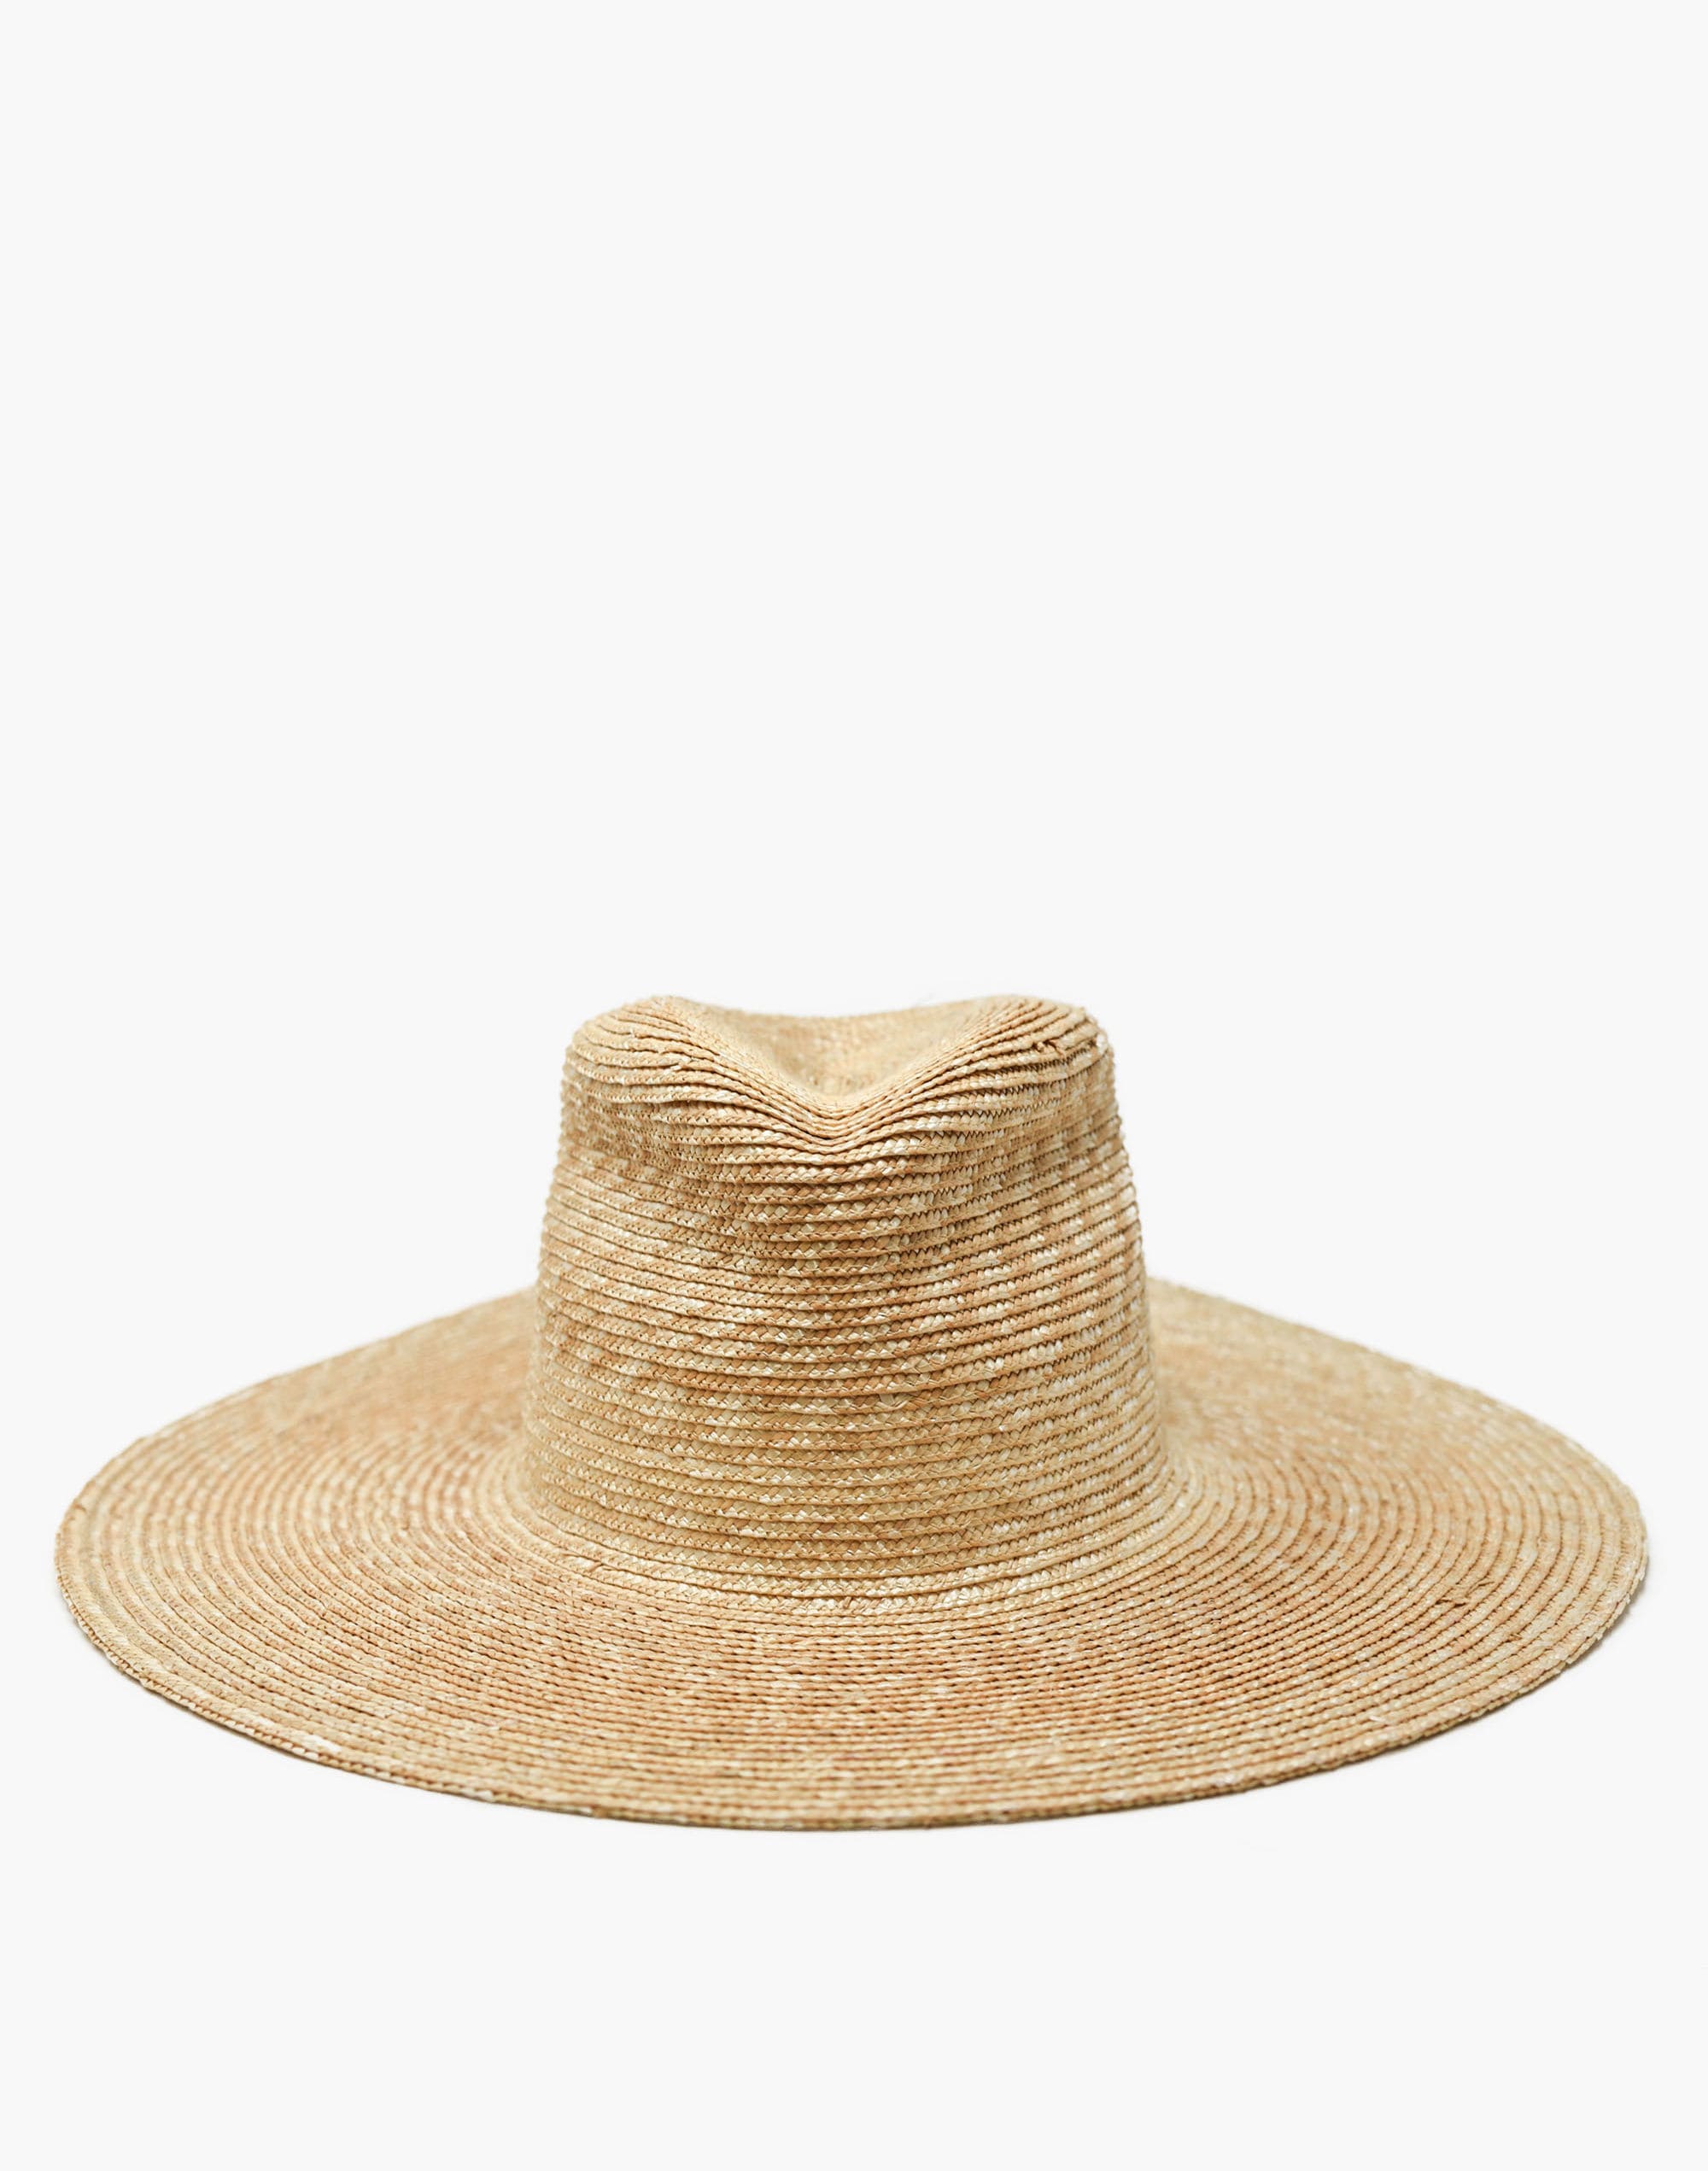 WYETH™ Straw Ipanema Hat